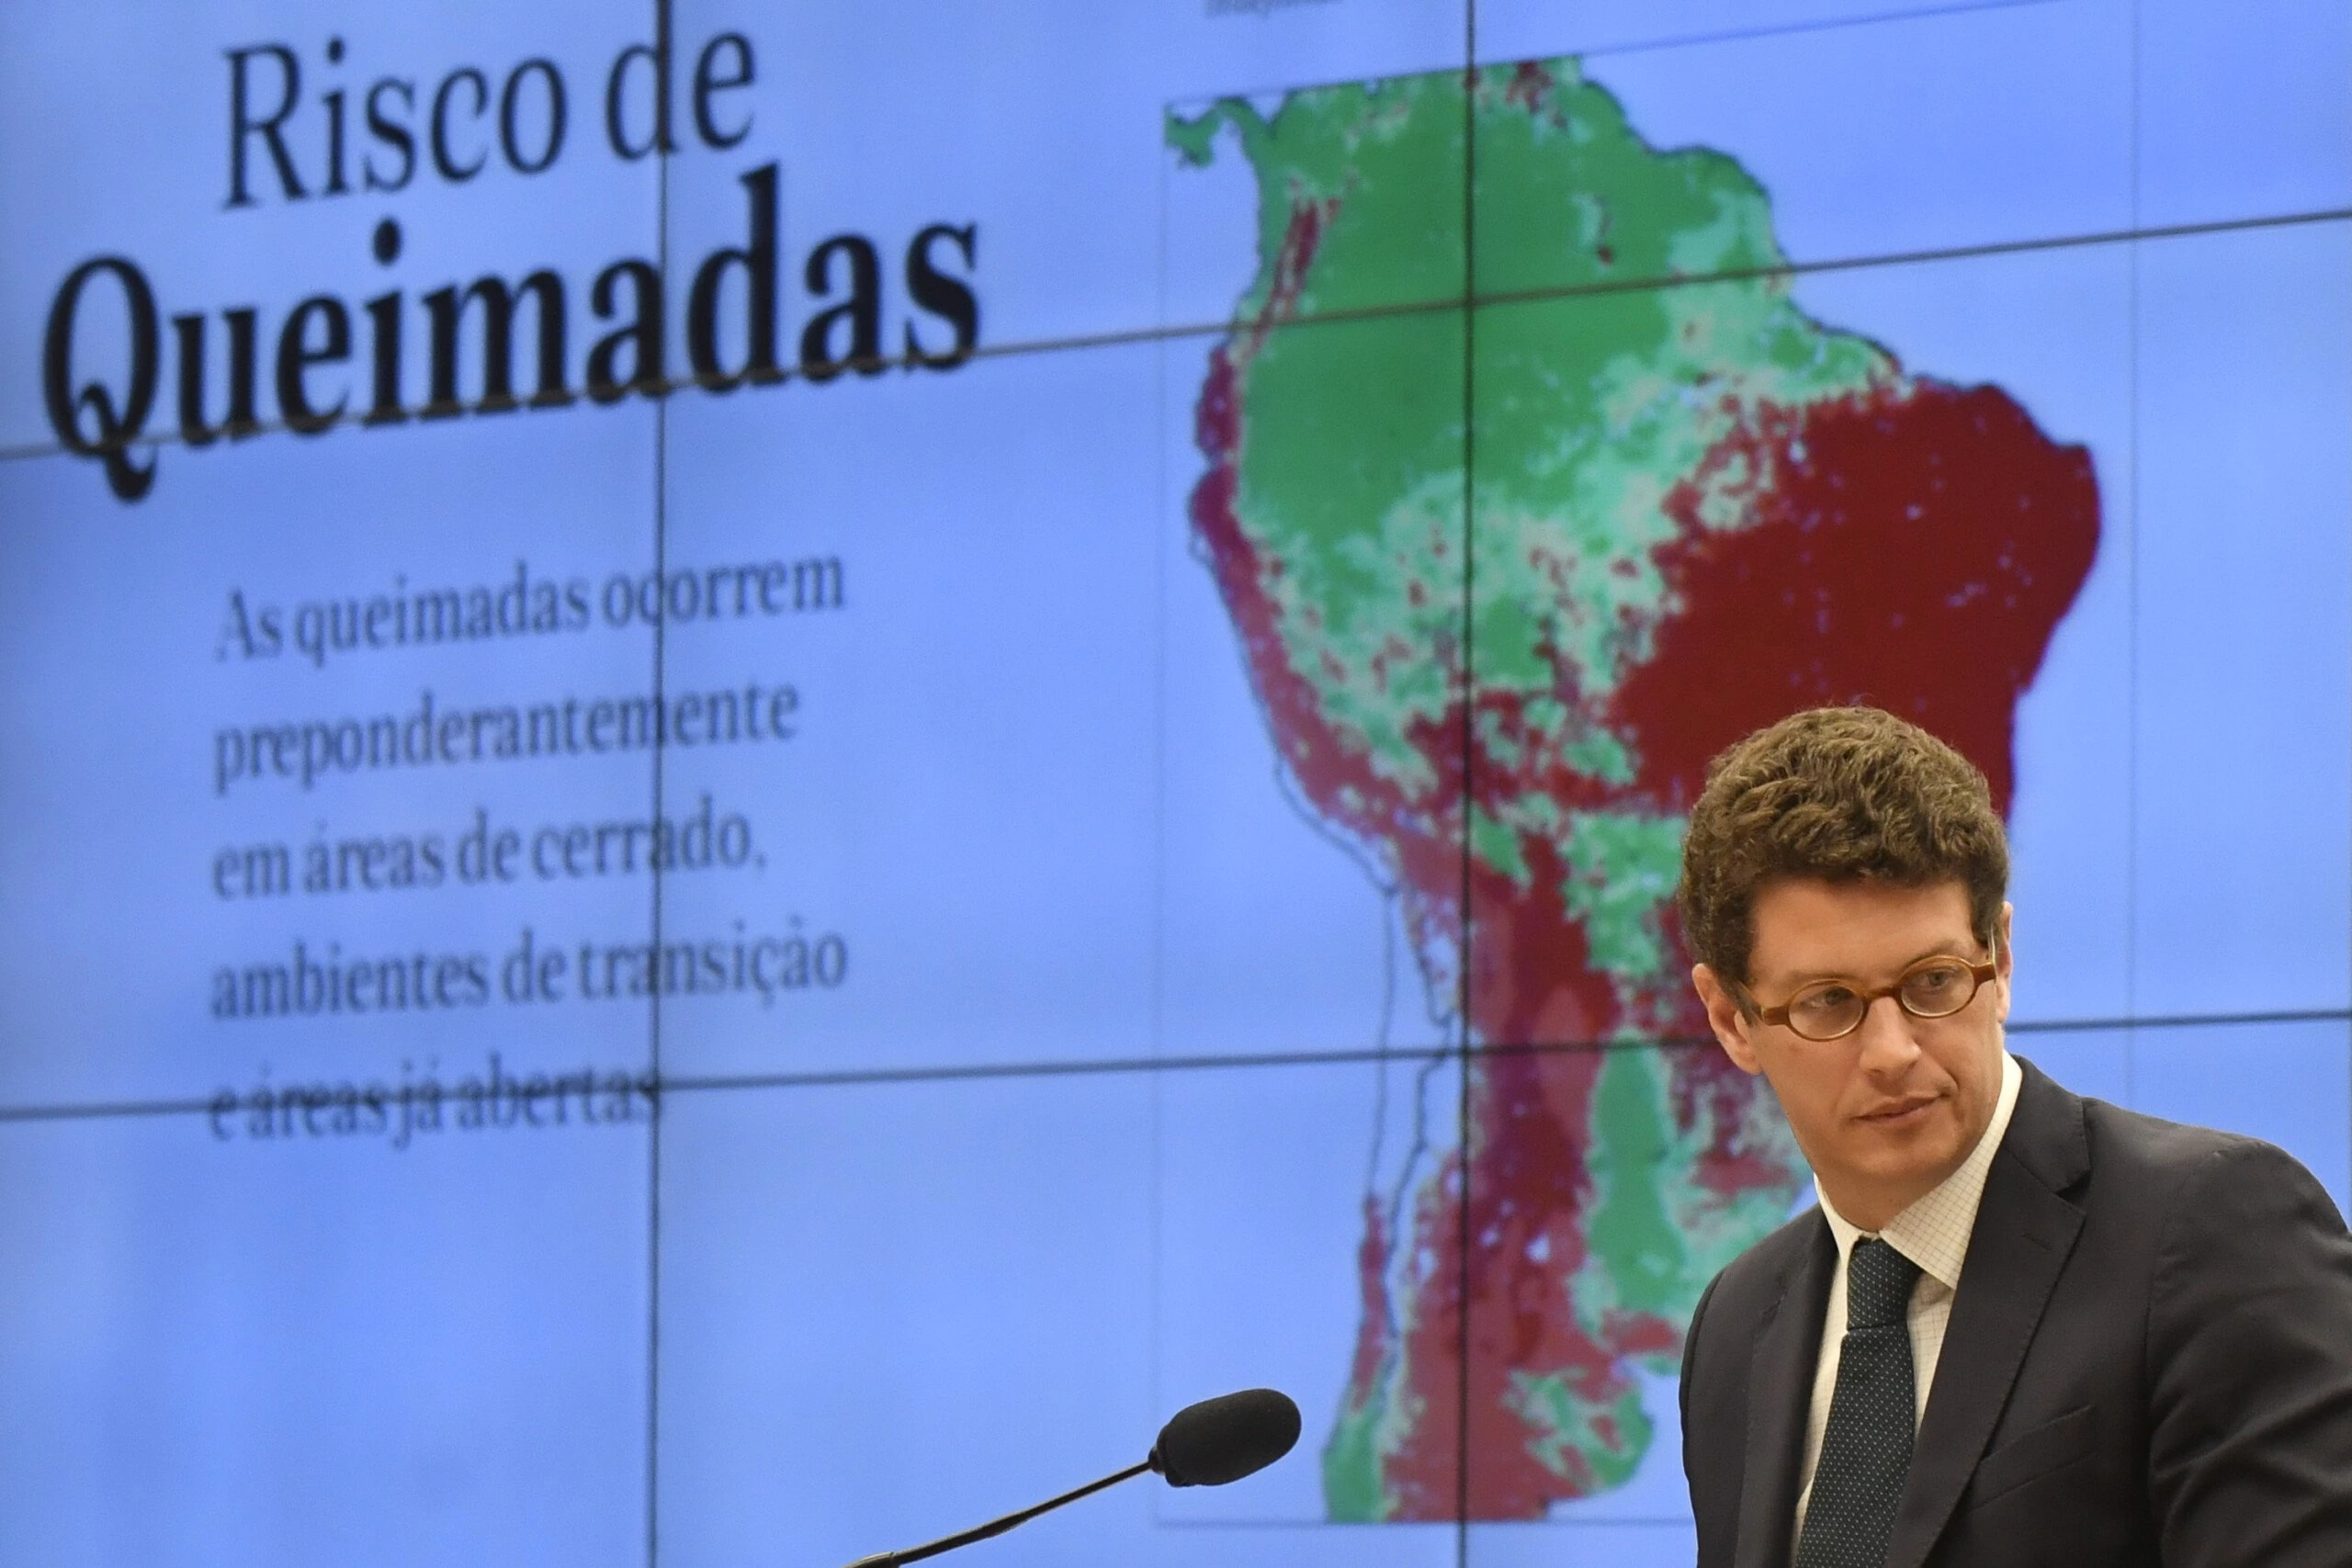 Brasília, 09.10.2019: O ministro do Meio Ambiente, Ricardo Salles, durante Comissão de Meio Ambiente e Desenvolvimento da Câmara, onde são discutidos os dados de números crescentes de desmatamento na Amazônia.